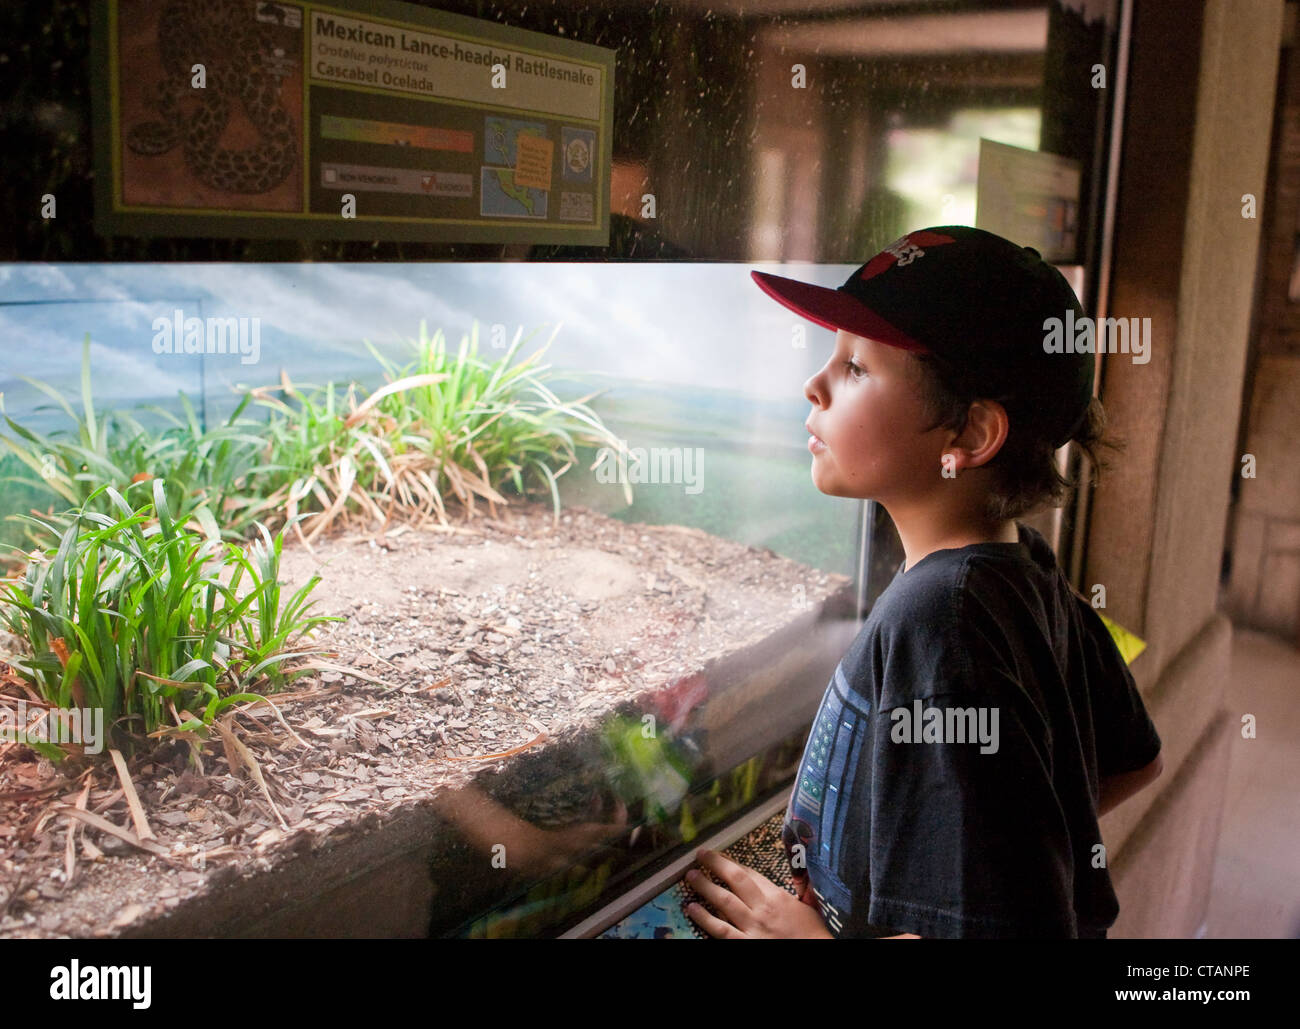 8 ans garçon américano-mexicaine en pics avec boîtier en verre au crotale San Antonio Texas Zoo. Banque D'Images